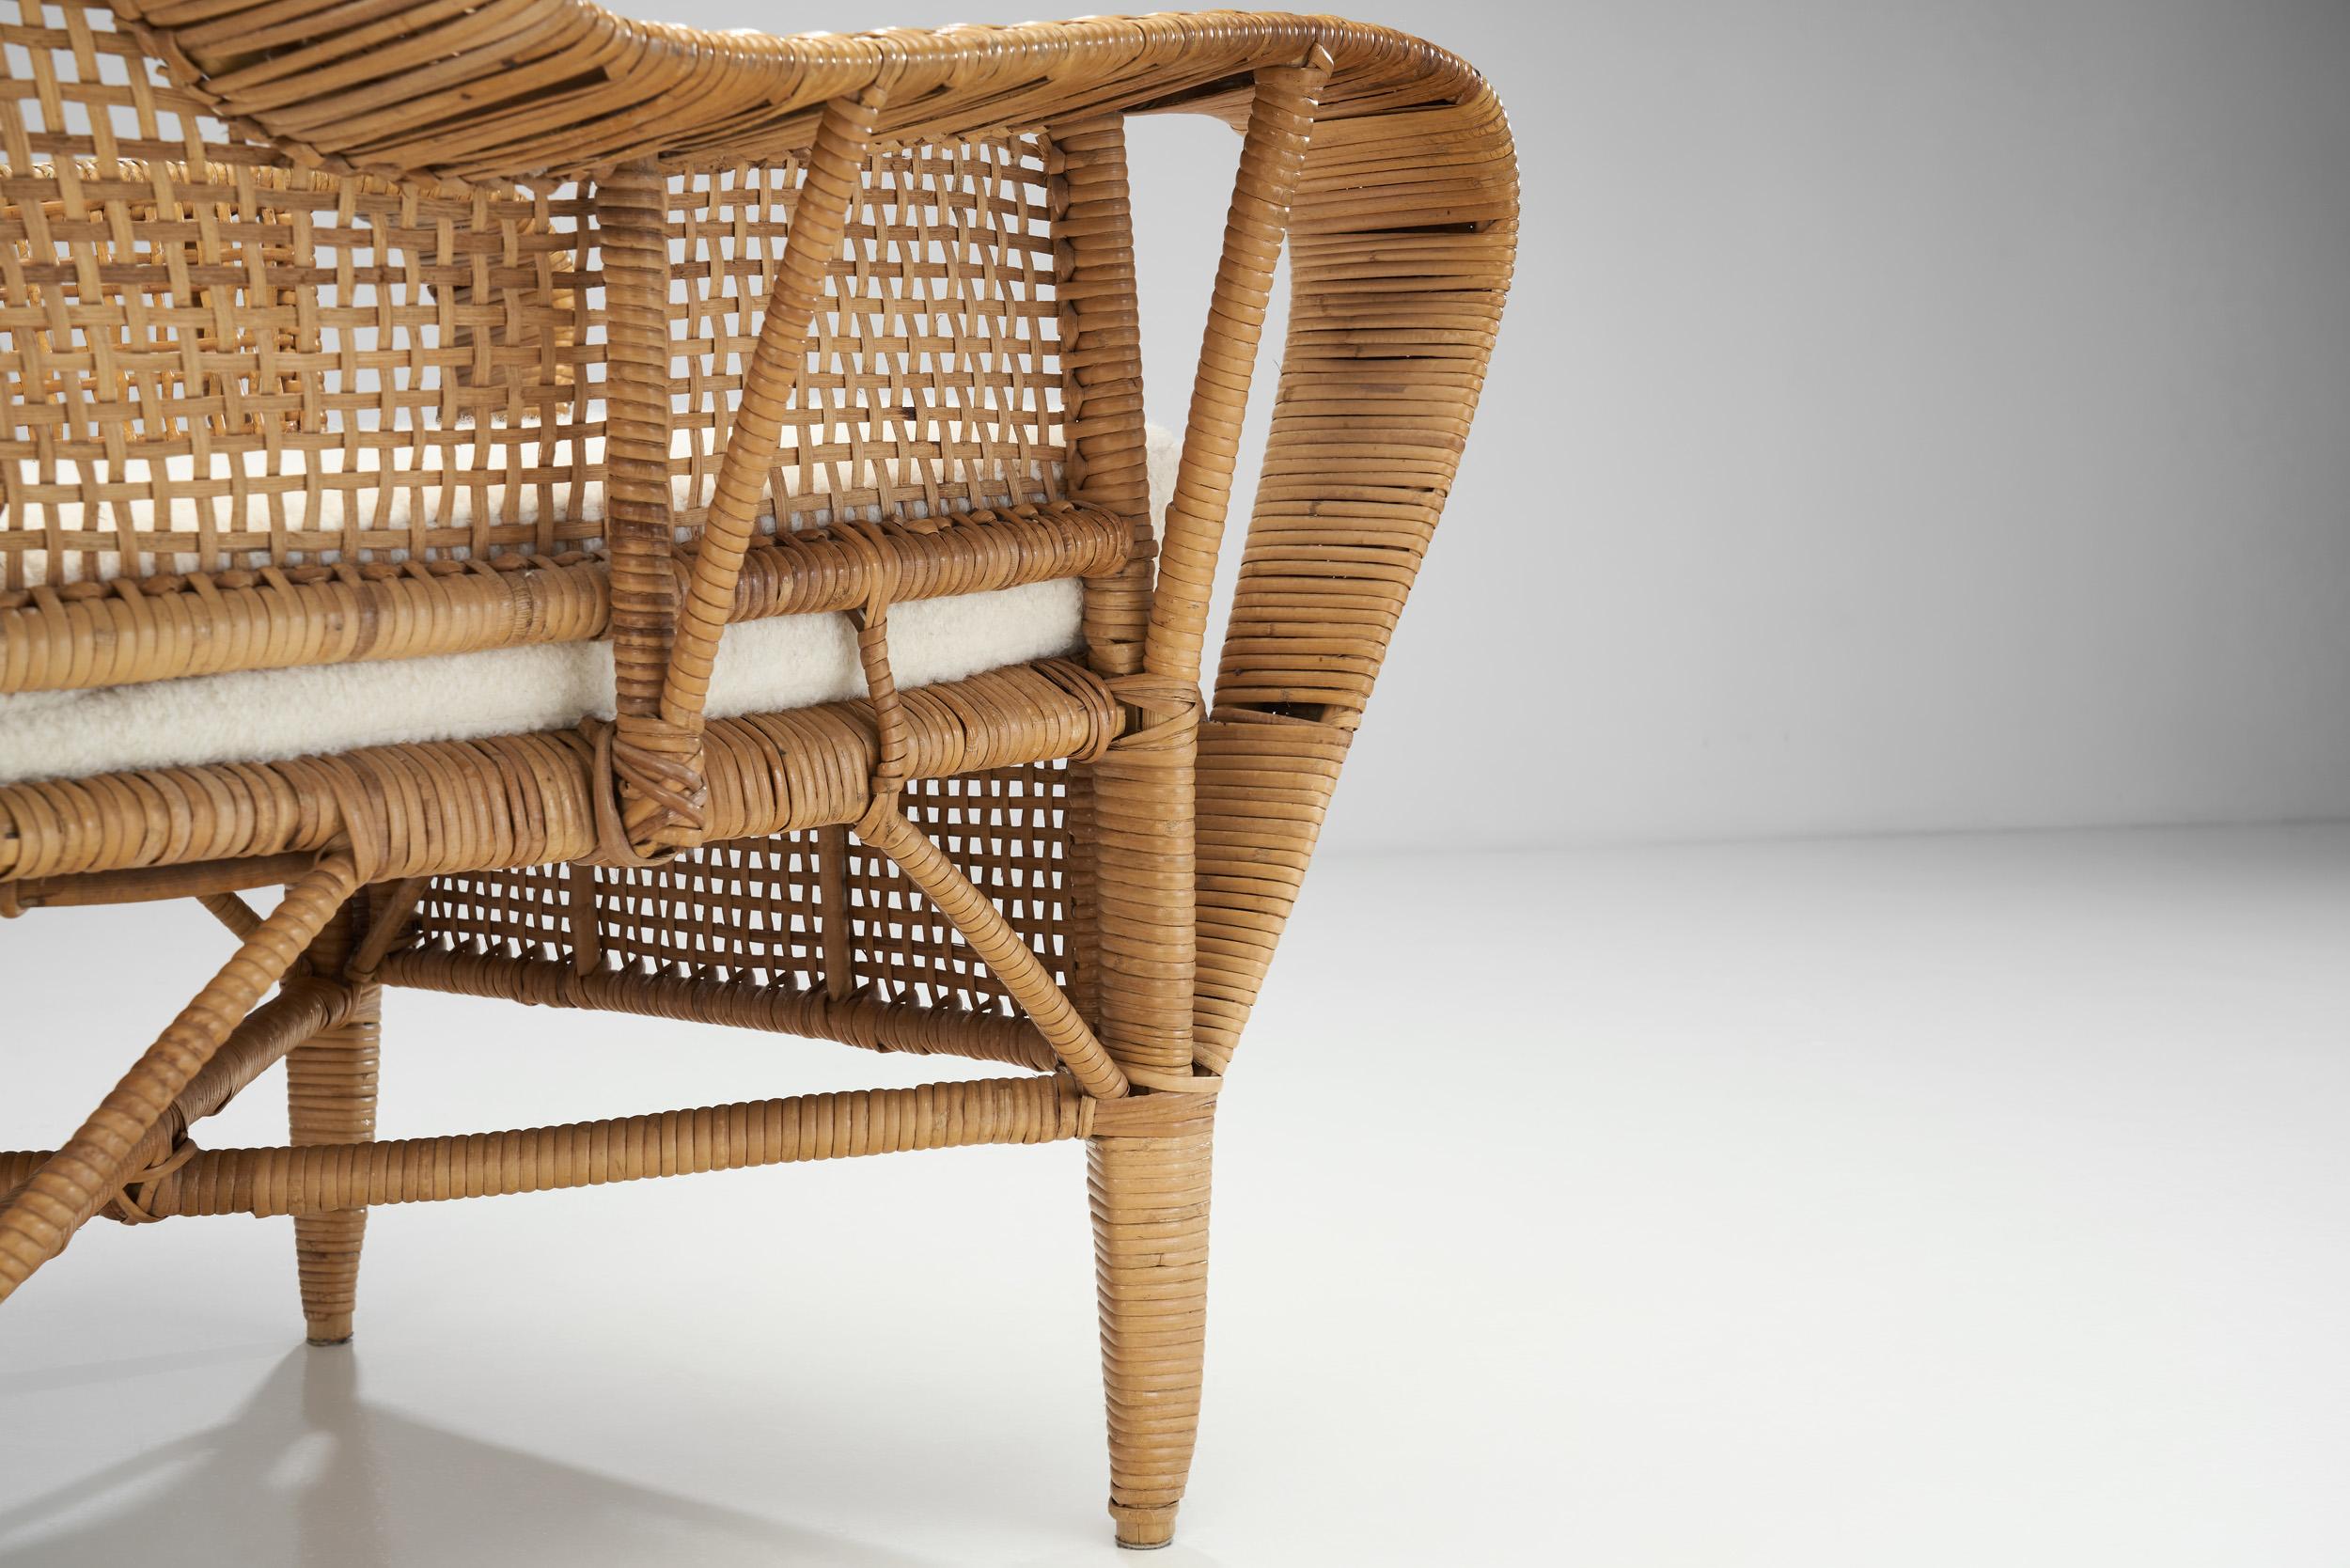 Kay Fisker “Canton” Woven Wicker Lounge Chair for Robert Wengler, Denmark 1950s For Sale 10